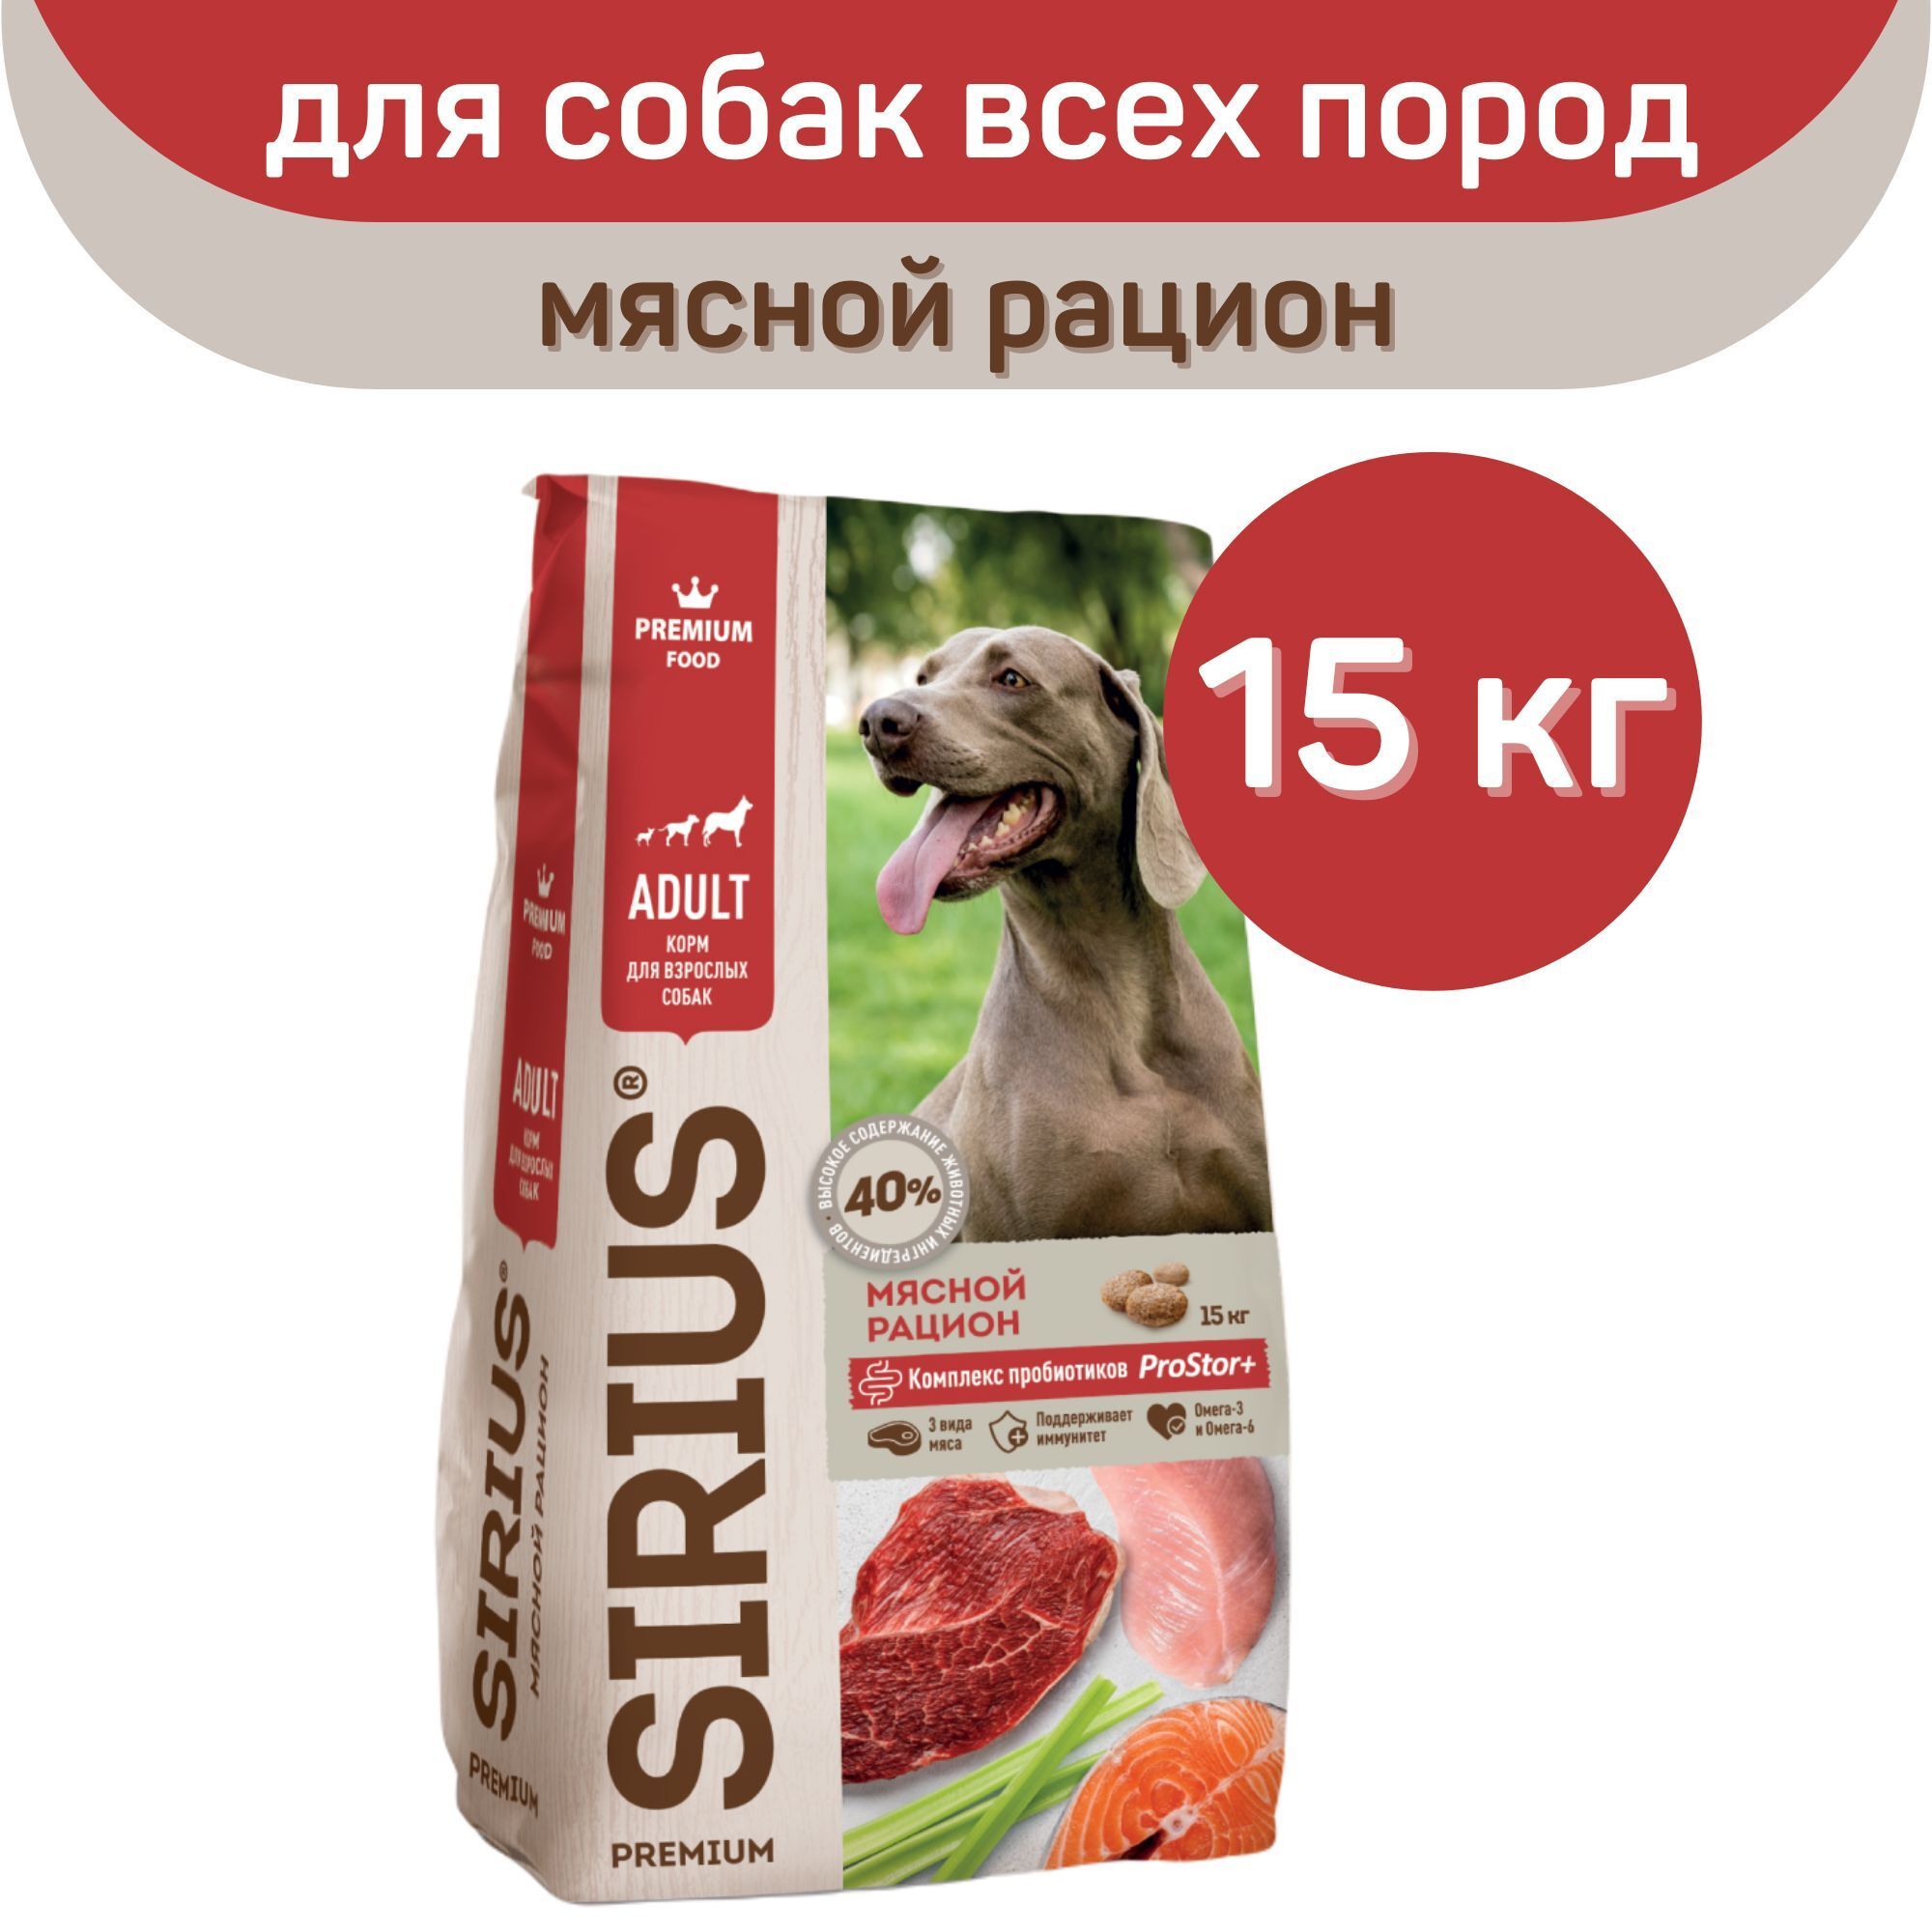 Сириус корм для собак 15. Sirius сухой корм для собак 15 кг. Корм Сириус для щенков 15кг. Сухой корм для собак Сириус мясной рацион. Sirius корм для собак 15кг.